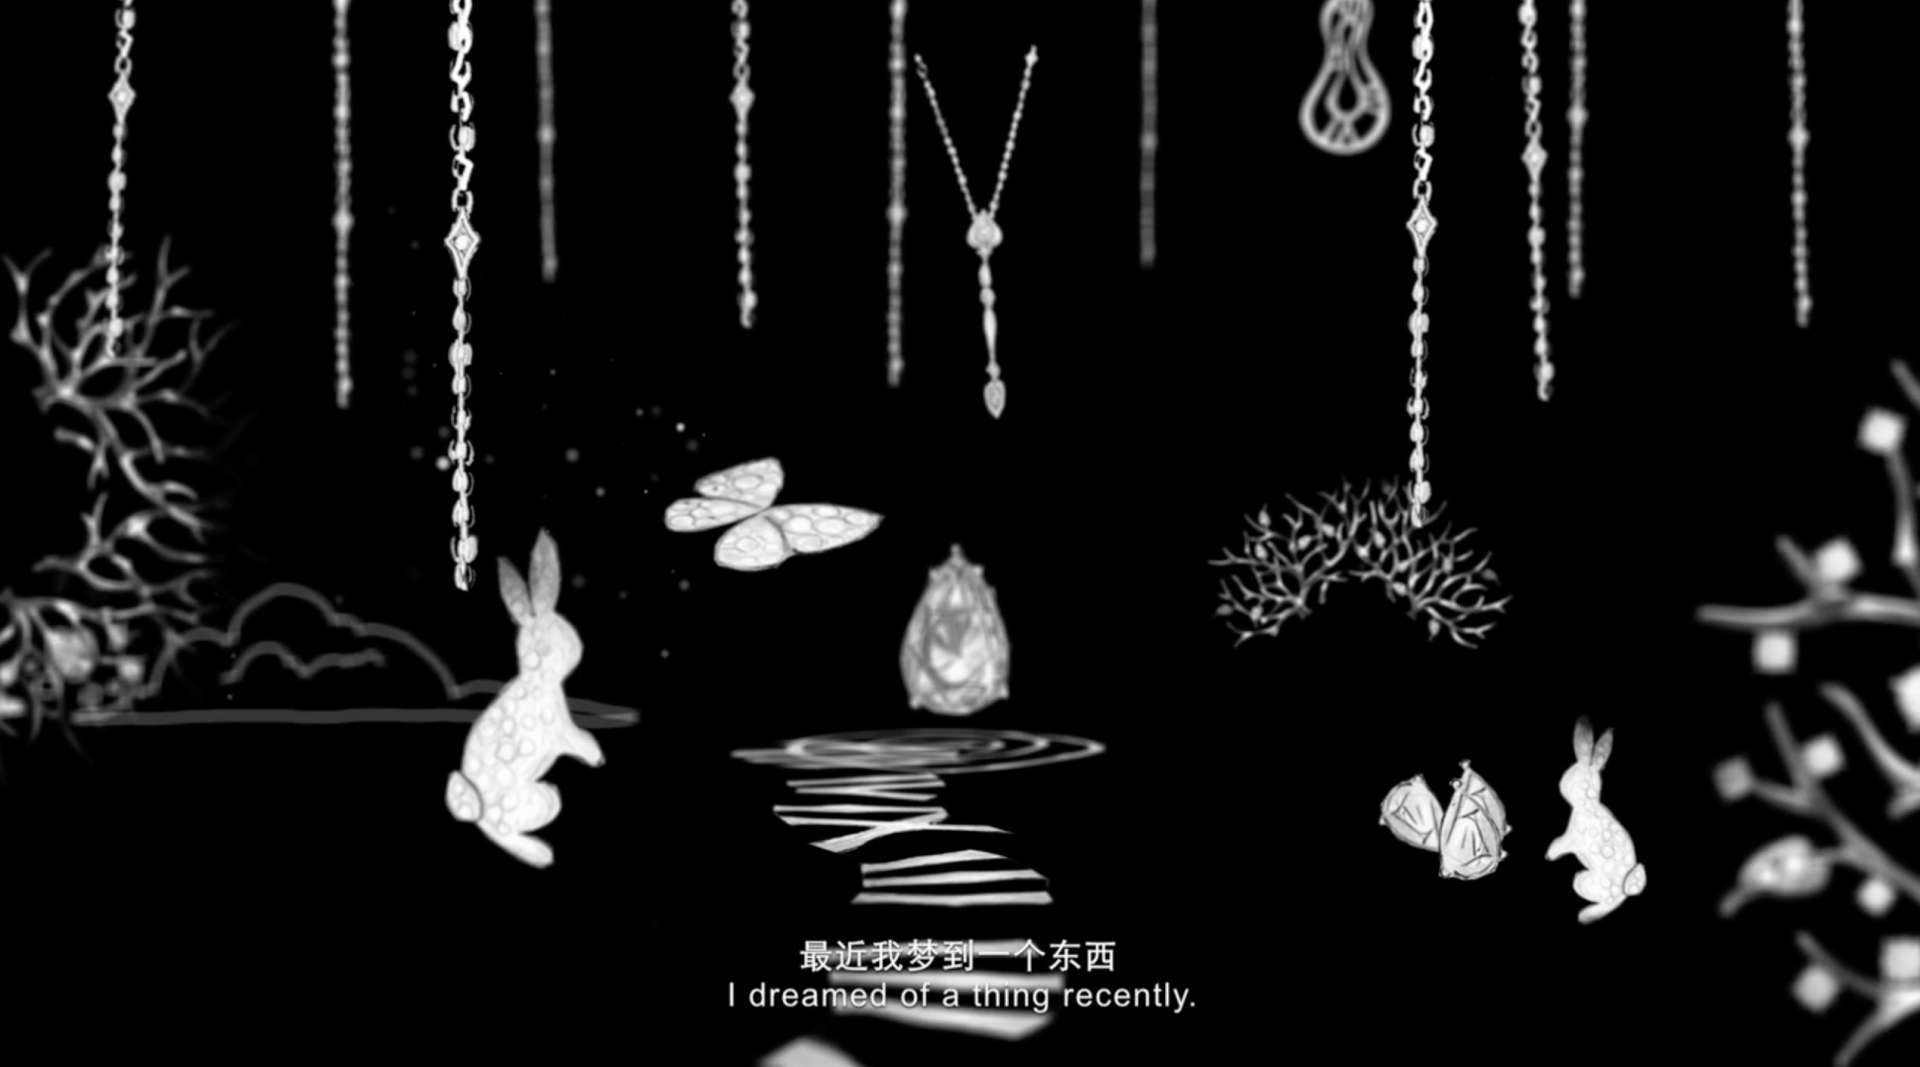 珠寶品牌潮宏基宣傳片